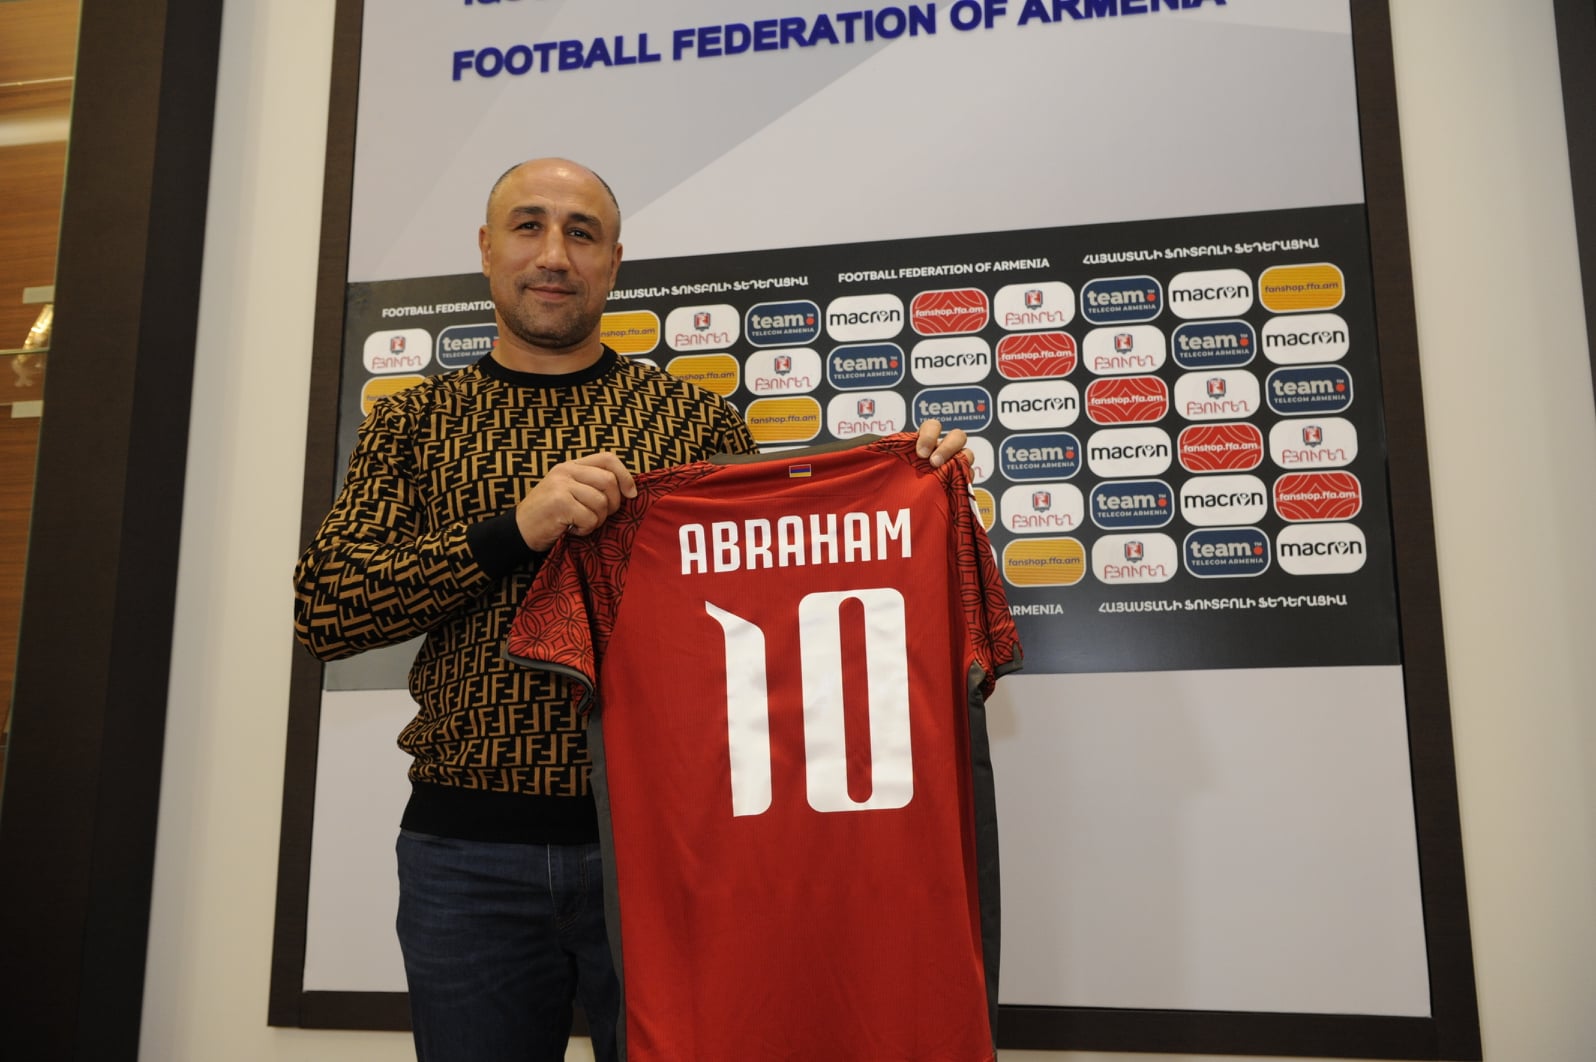 Աբրահամն այցելել է Հայաստանի ֆուտբոլի ֆեդերացիա ֆոտո - Արթուր Աբրահամն այցելել է Հայաստանի ֆուտբոլի ֆեդերացիա (ֆոտո)